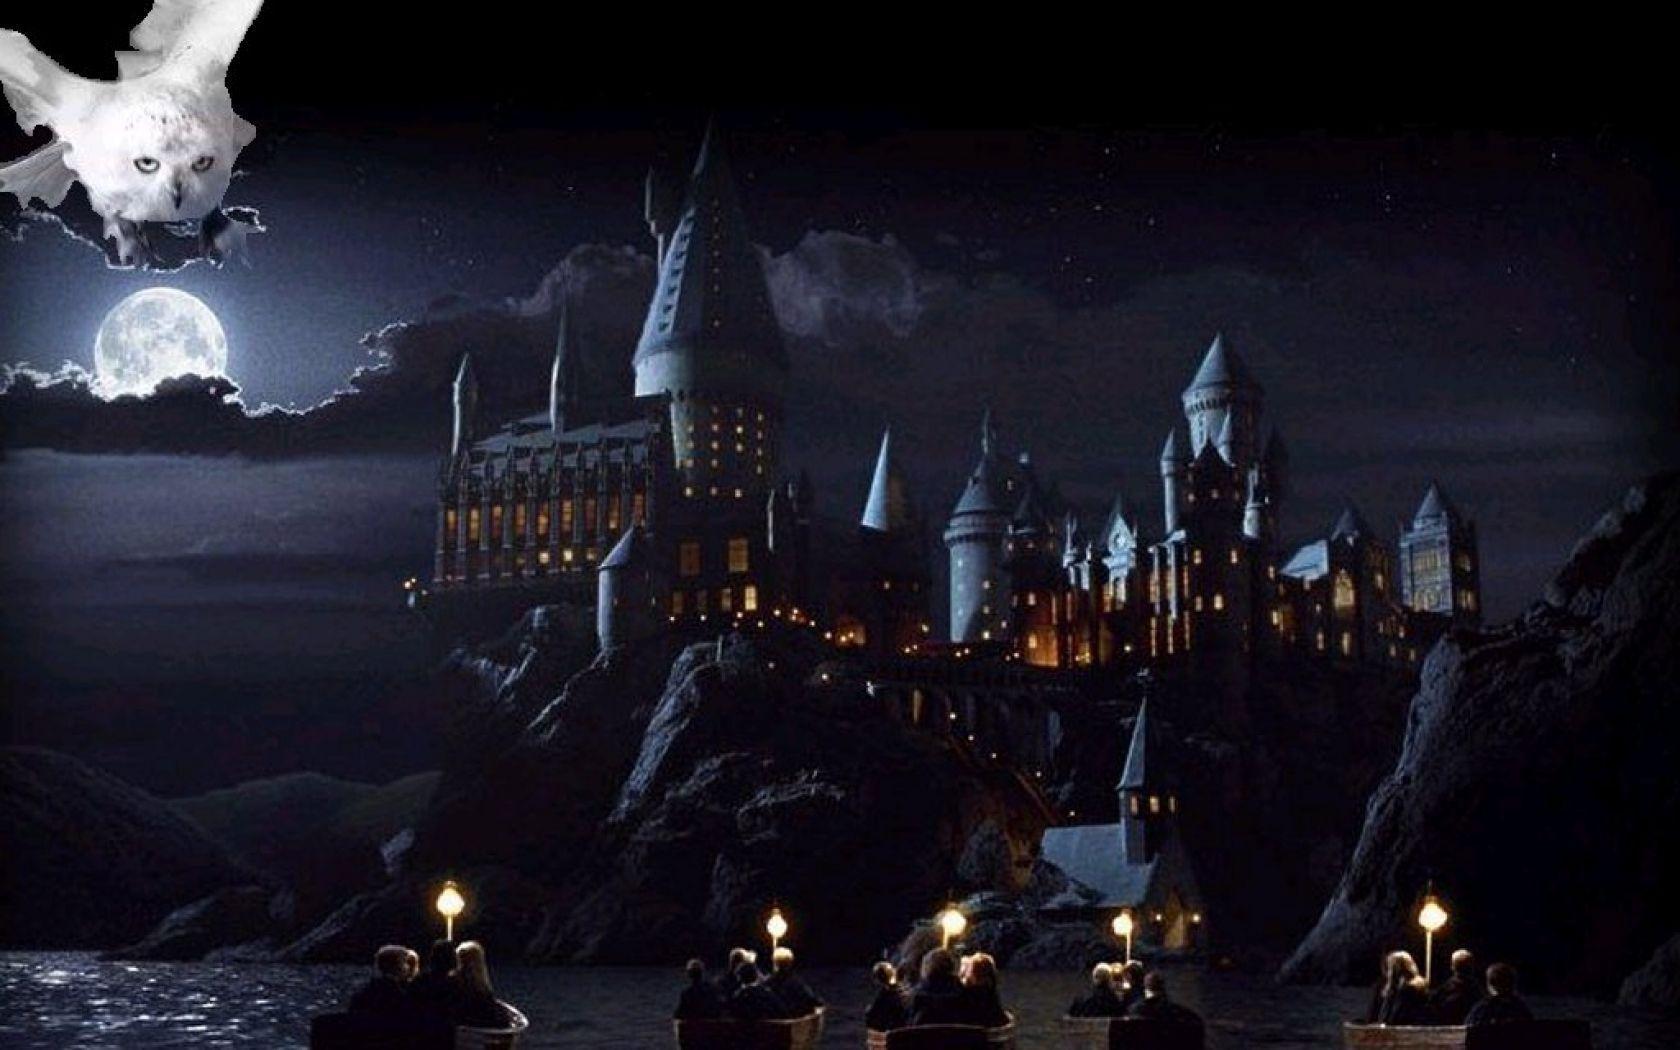 Nếu bạn là một fan hâm mộ của bộ truyện Harry Potter, thì những hình nền desktop với hình ảnh phù thủy trường Hogwarts mang đậm phong cách cổ điển chắc chắn sẽ không làm bạn thất vọng. Với những hình ảnh đậm chất phép thuật, bạn sẽ có được trải nghiệm tuyệt vời về thế giới ma thuật này.